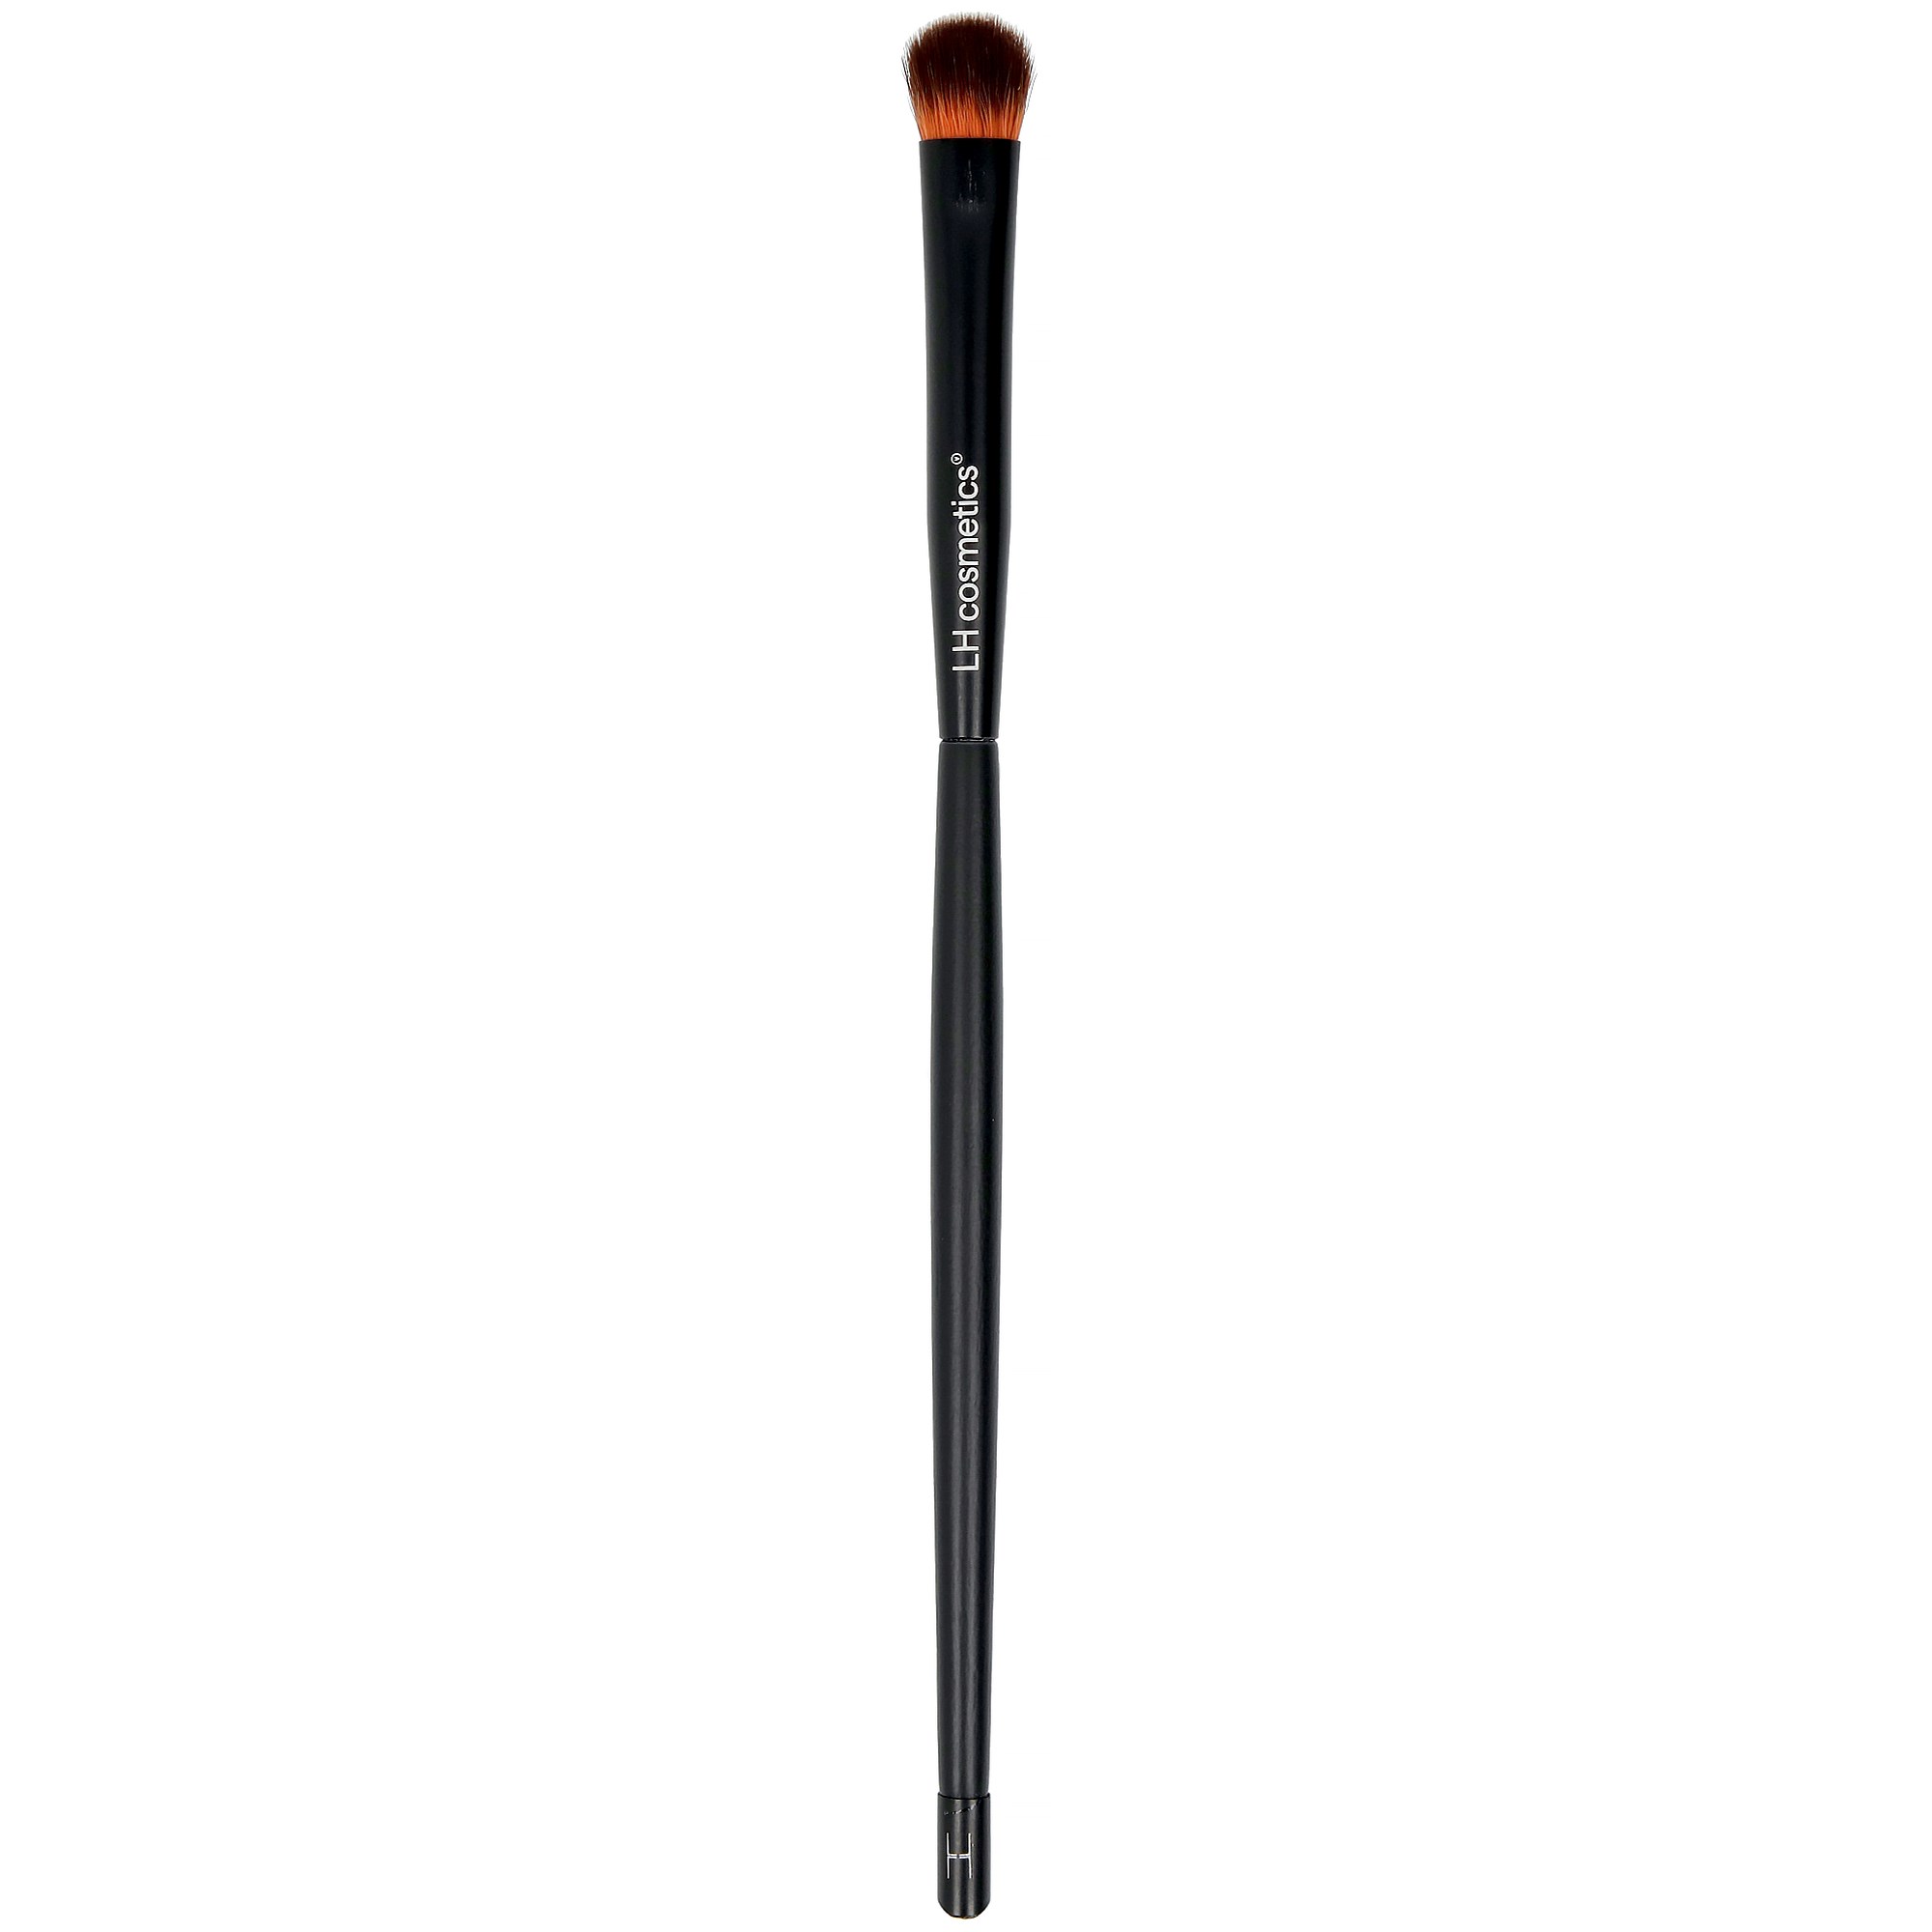 Bilde av Lh Cosmetics Brushes & Tools Blending Brush 303 Small